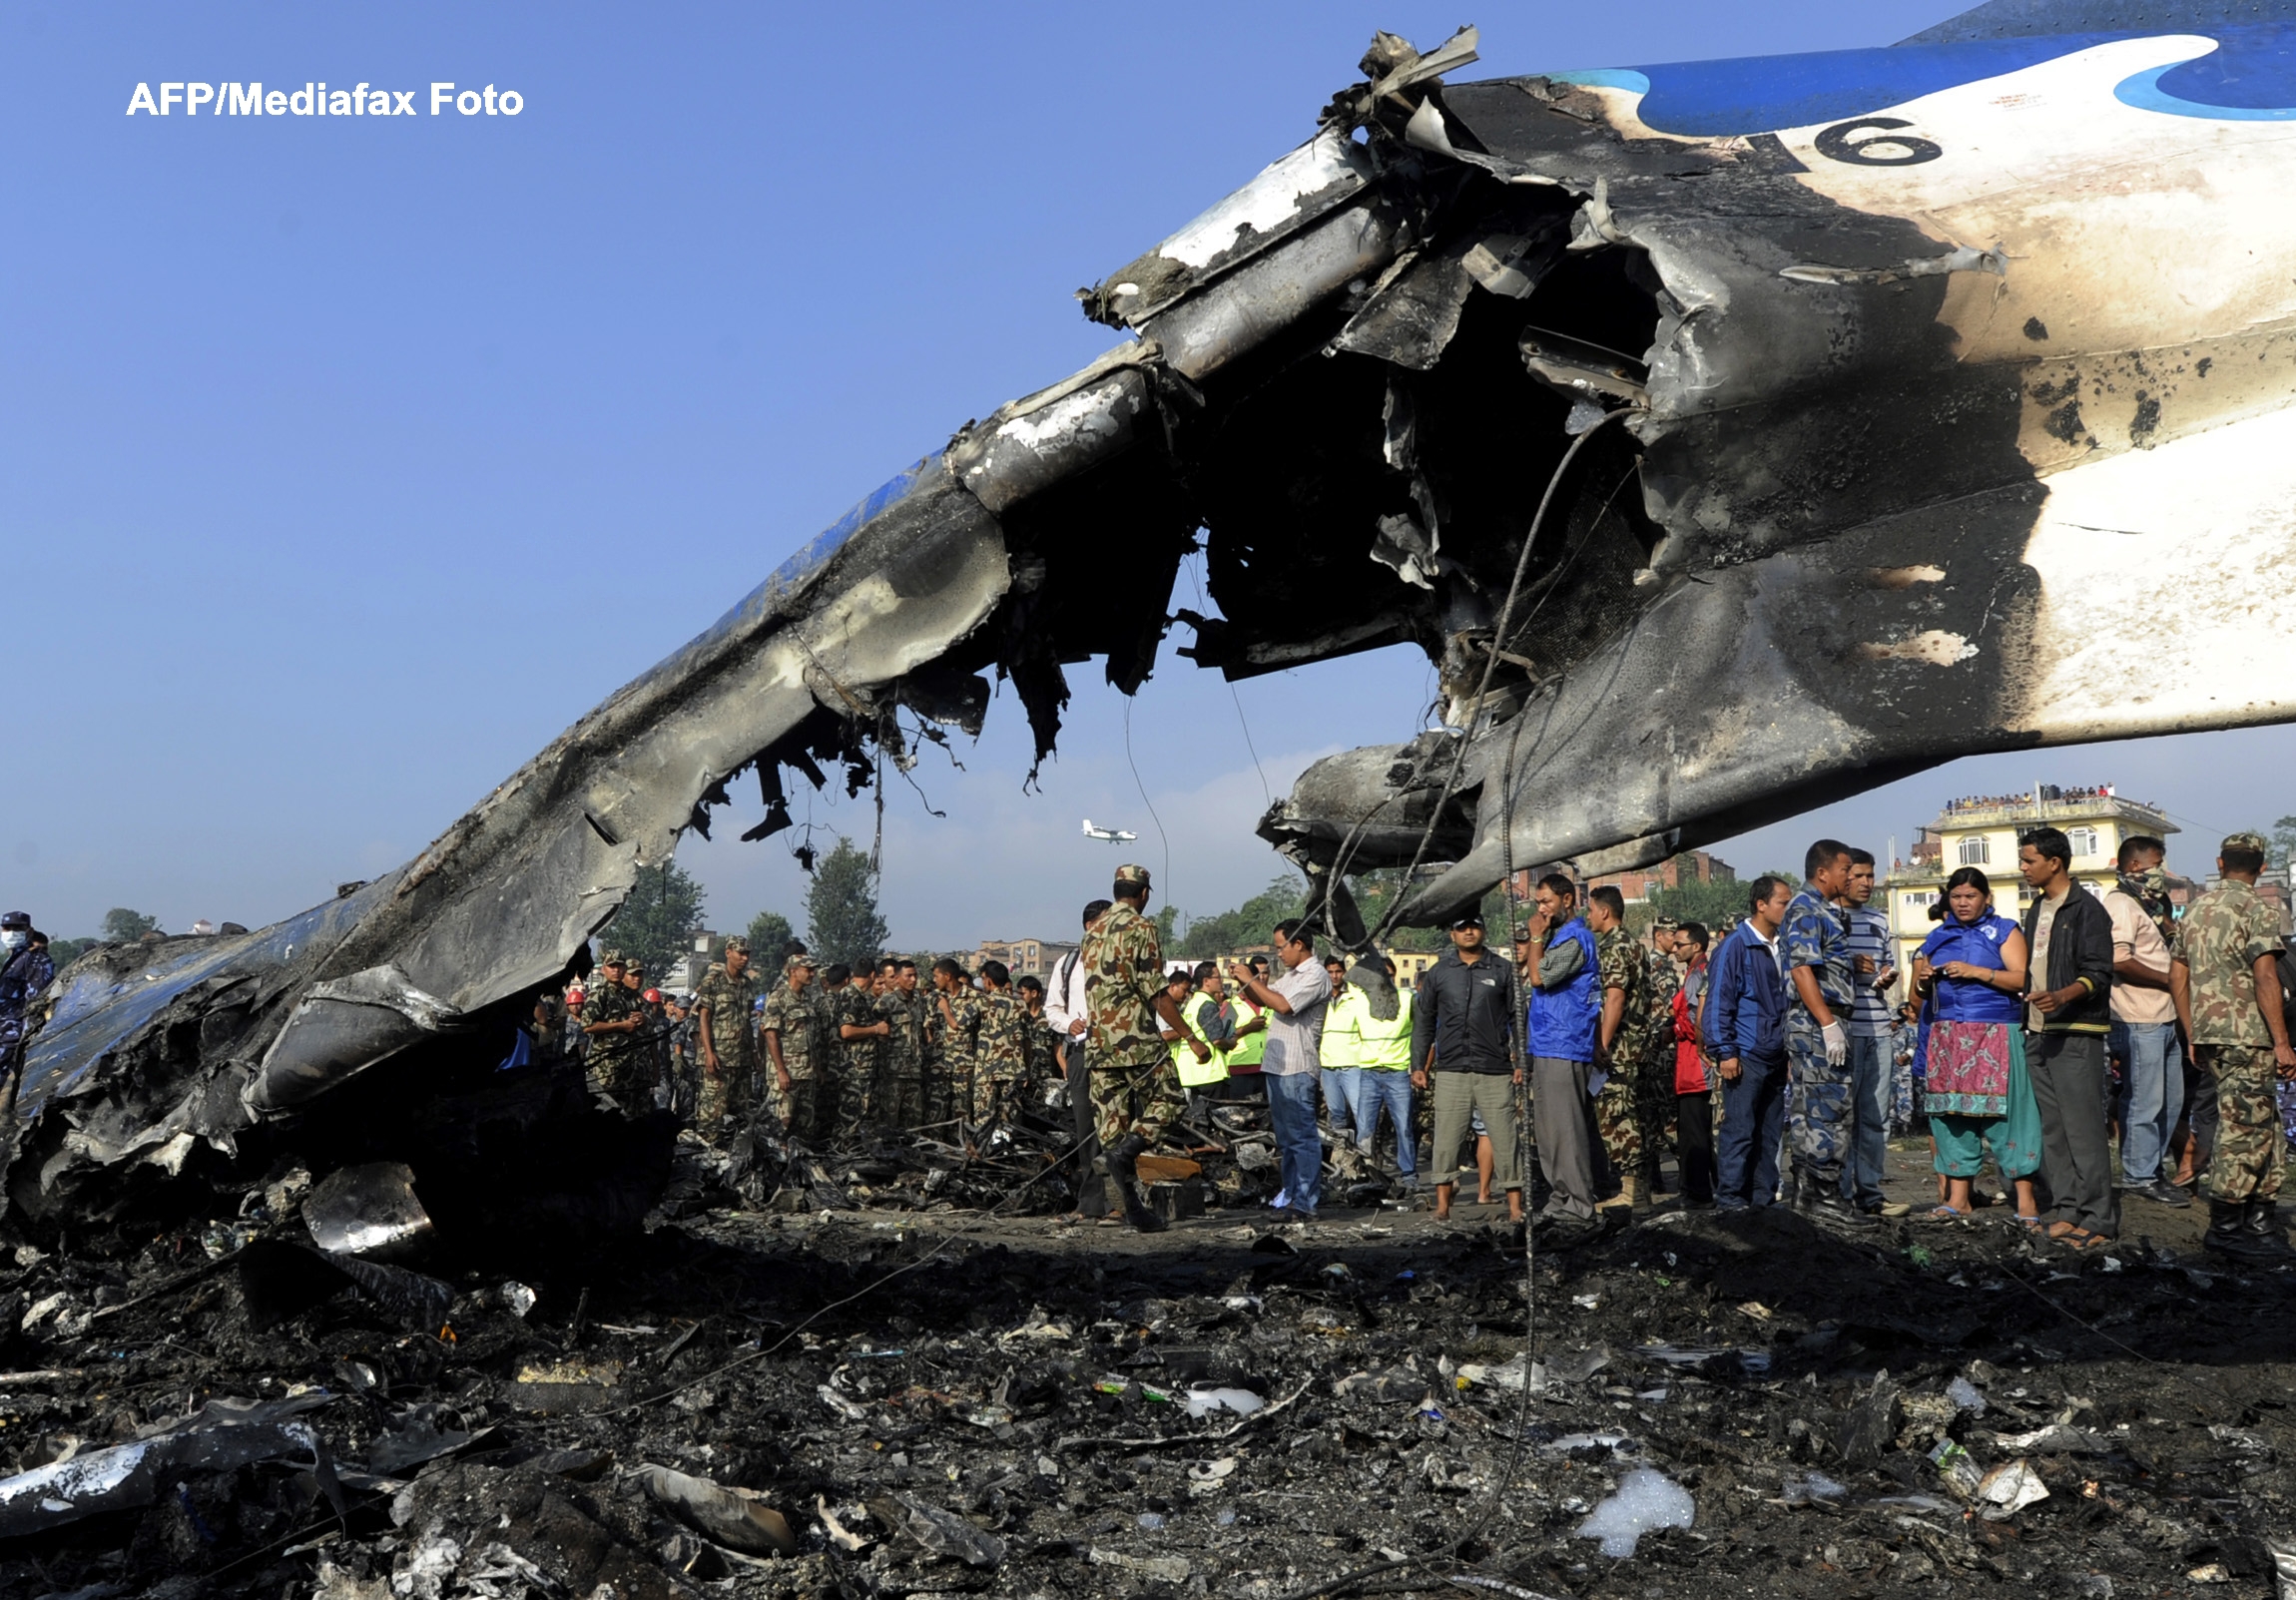 Tragedie aviatica in Nepal. Un avion s-a prabusit, iar toti pasagerii au murit. VIDEO